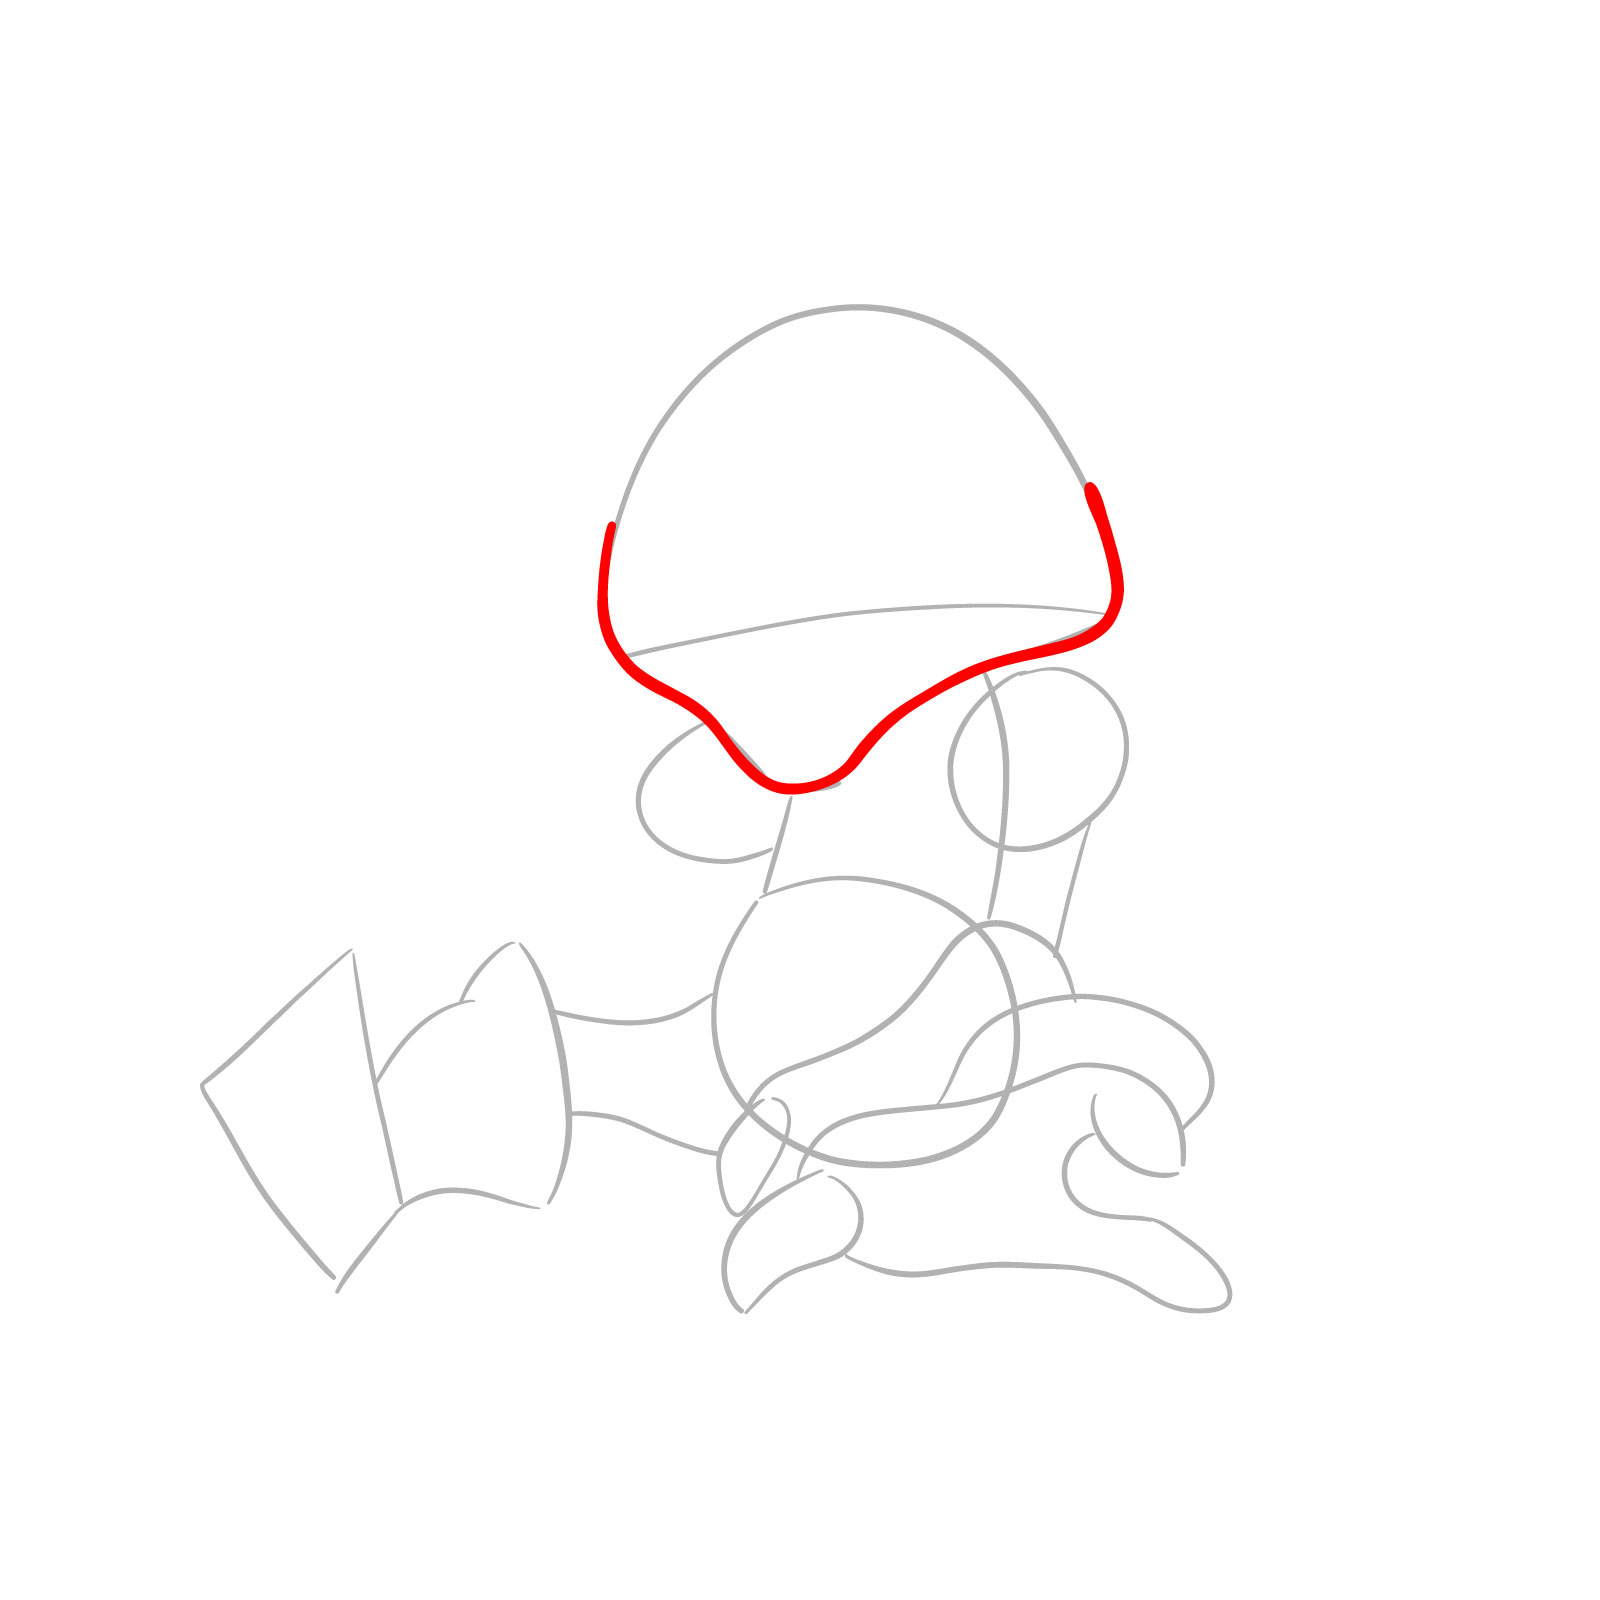 How to draw Abra Pokémon - step 04